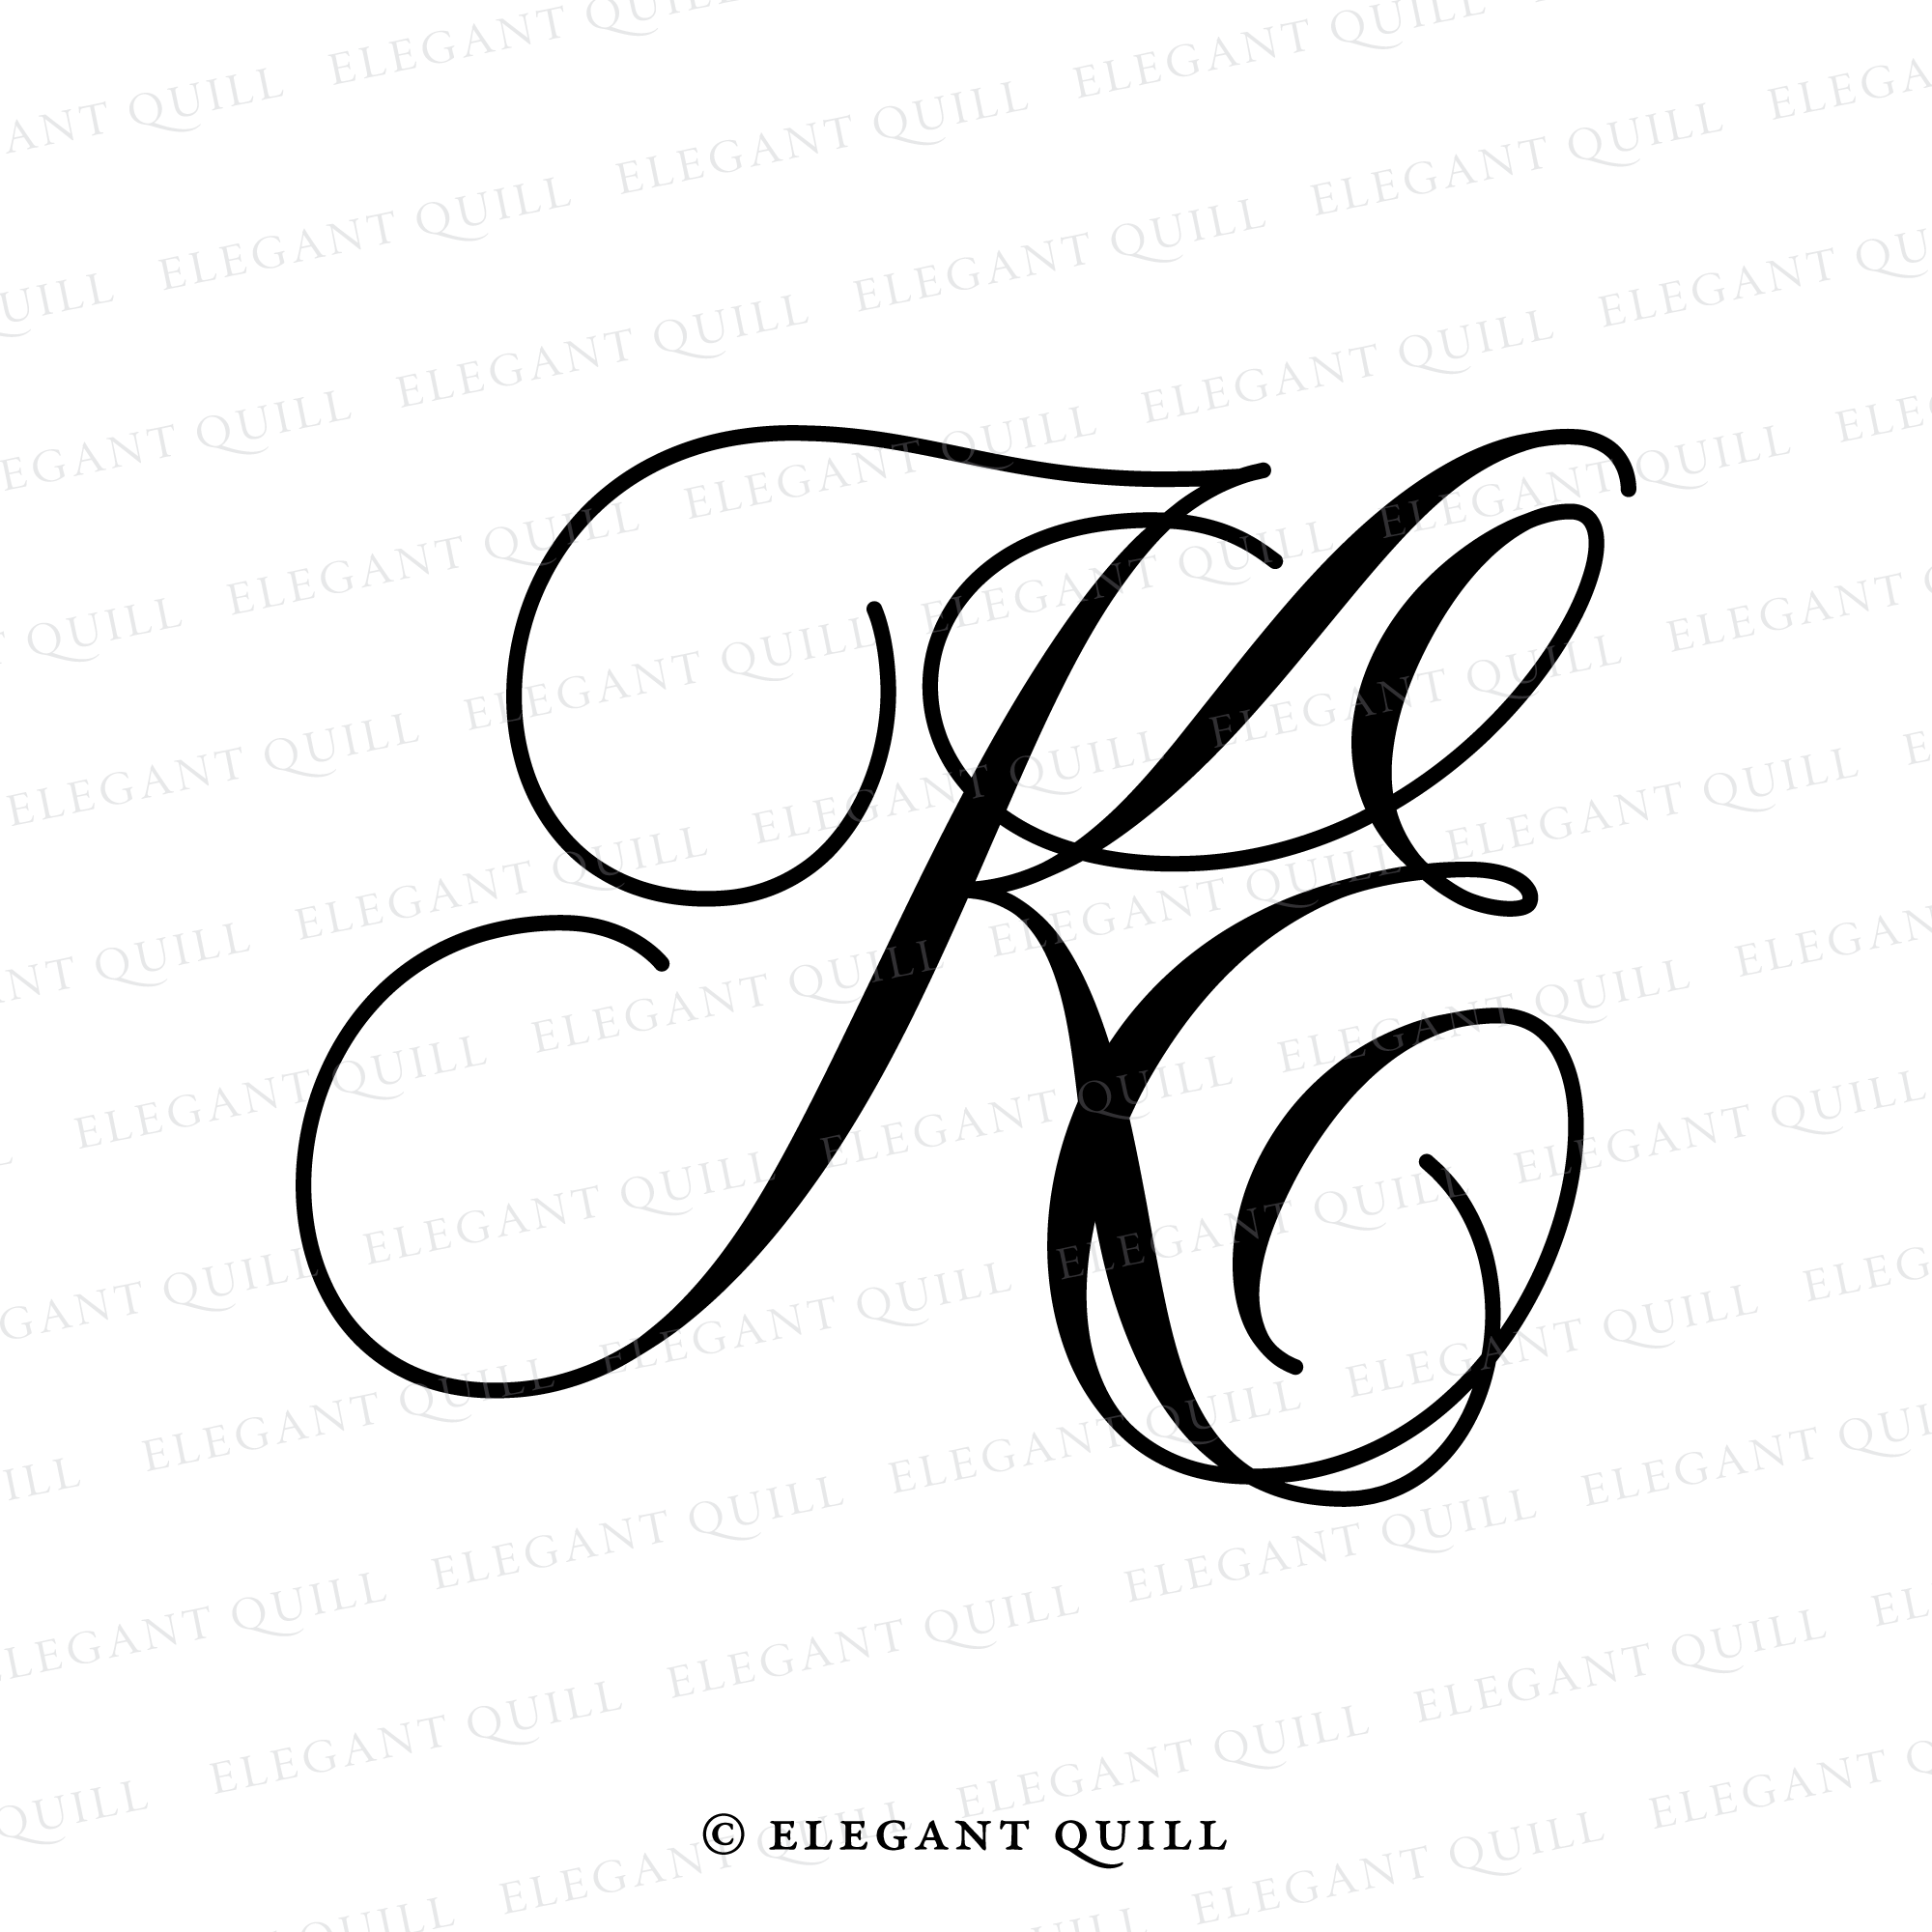 Initial ek script letter type logo design Vector Image